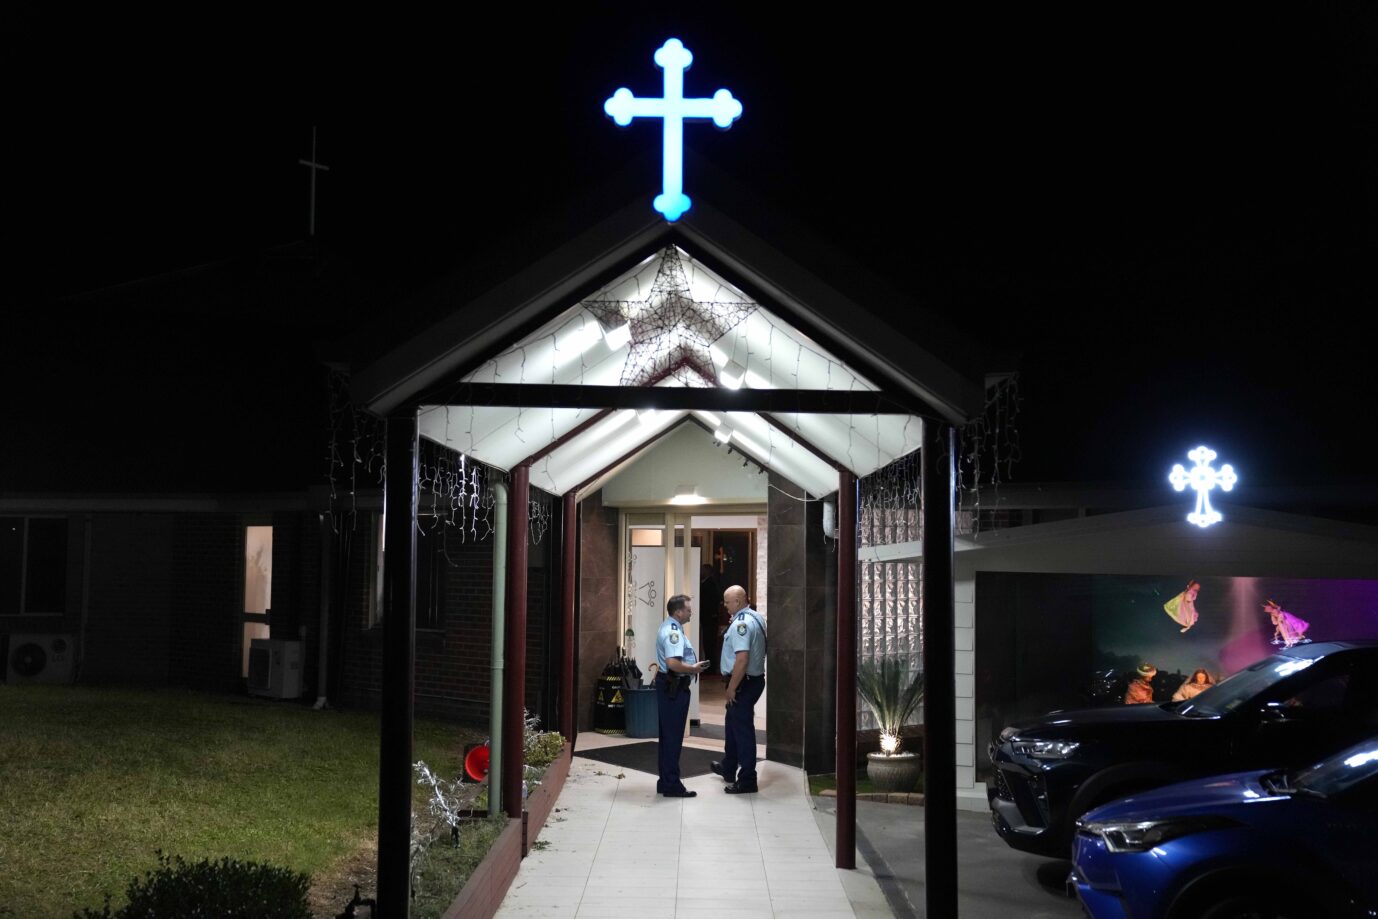  Zwei Polizisten in Uniformen der australischen Polizei stehen im Eingang einer assyrisch-orthdoxen Kirche in Sydney.